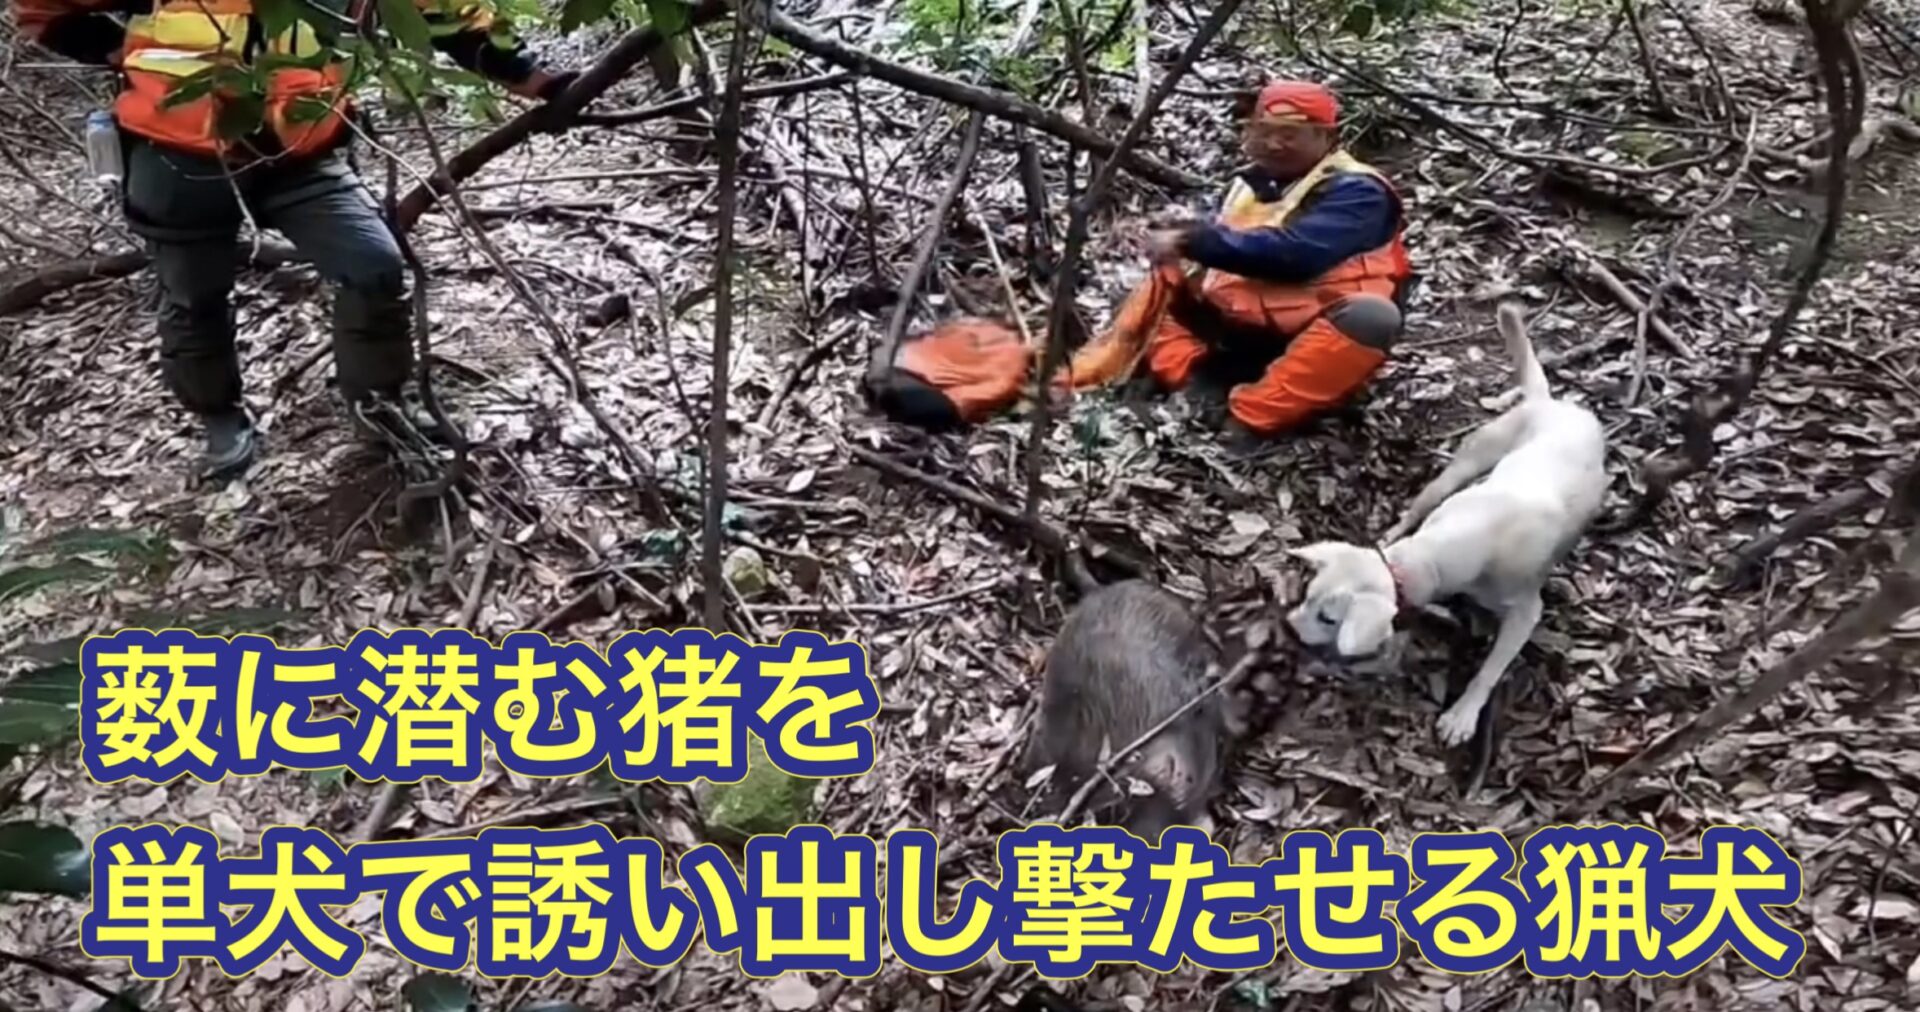 猟師と猟師の間の藪に隠れていたイノシシを猟犬が見つけ出し、獲らせた猟犬カシン